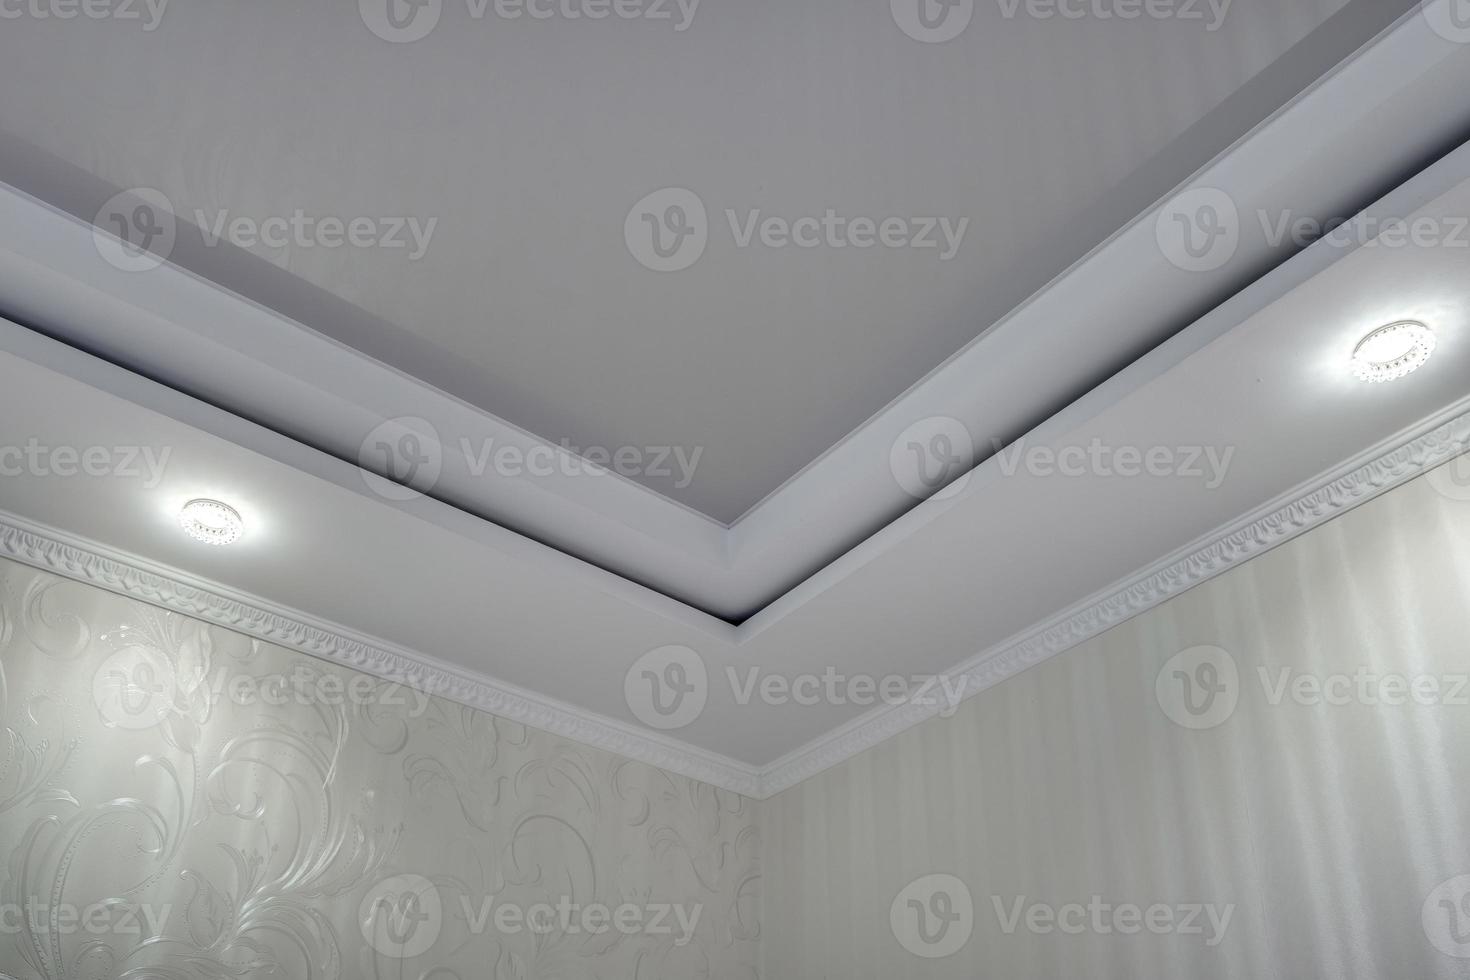 plafond suspendu avec lampes halogènes et construction de cloisons sèches avec moulures complexes dans une pièce vide d'un appartement ou d'une maison. plafond tendu de forme blanche et complexe. photo